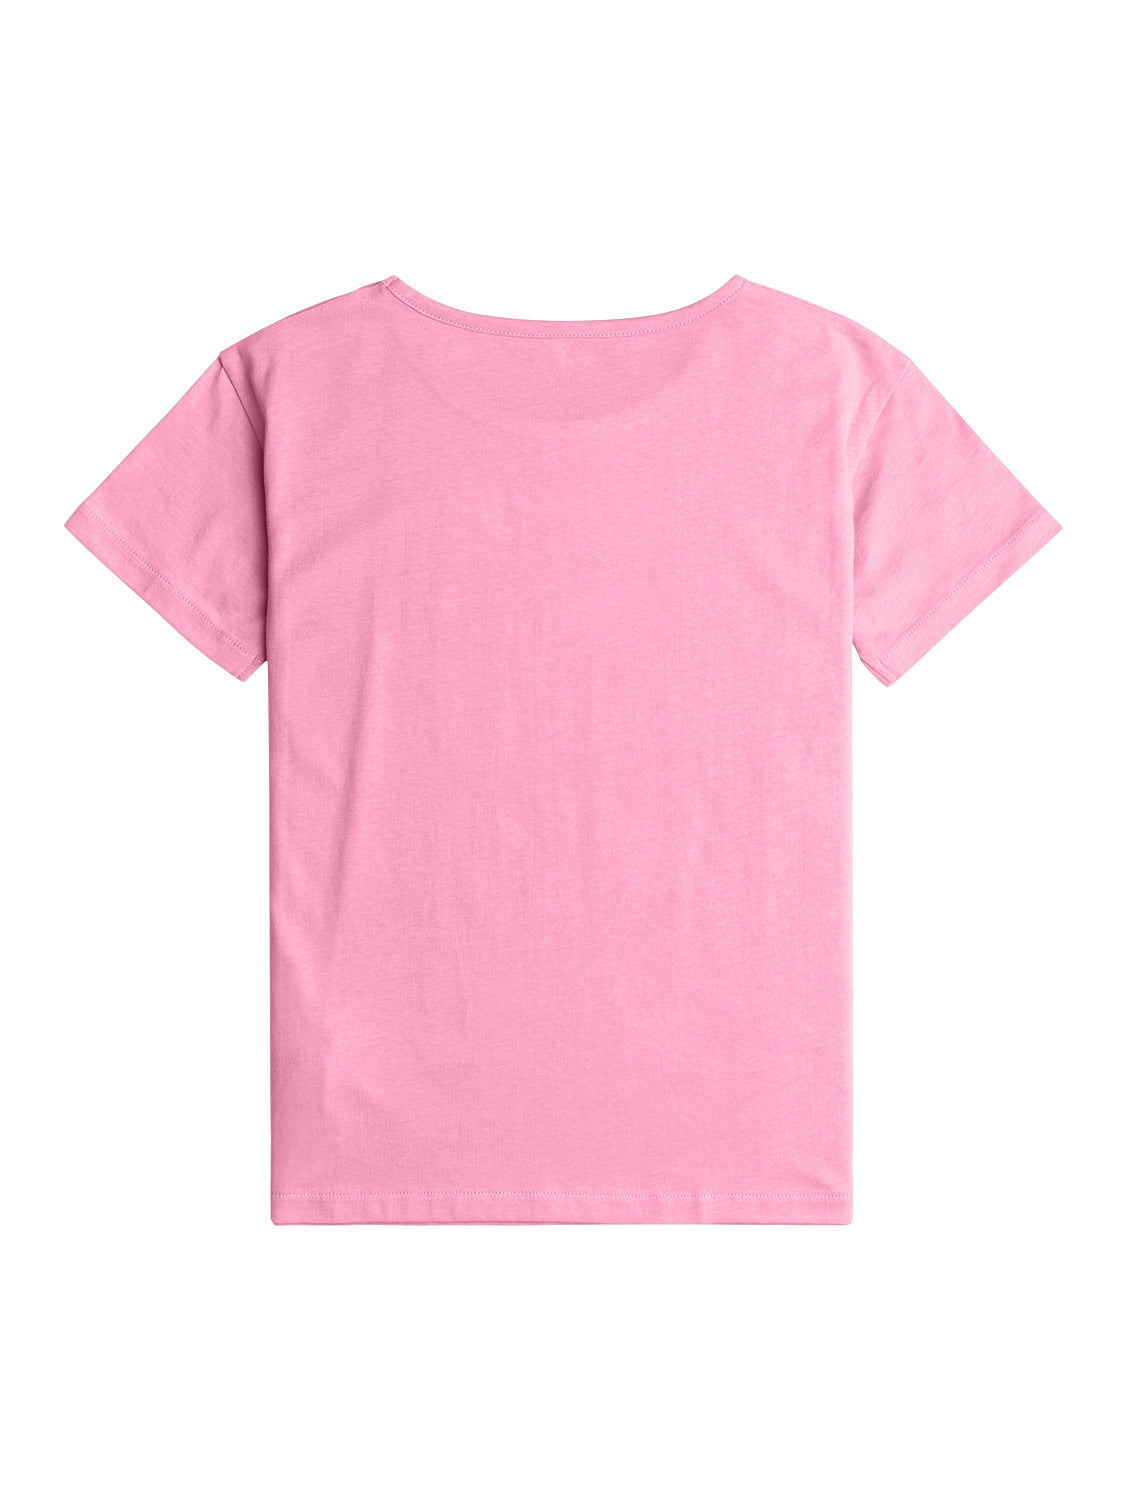 Roxy Girls Mountain Feel T-Shirt